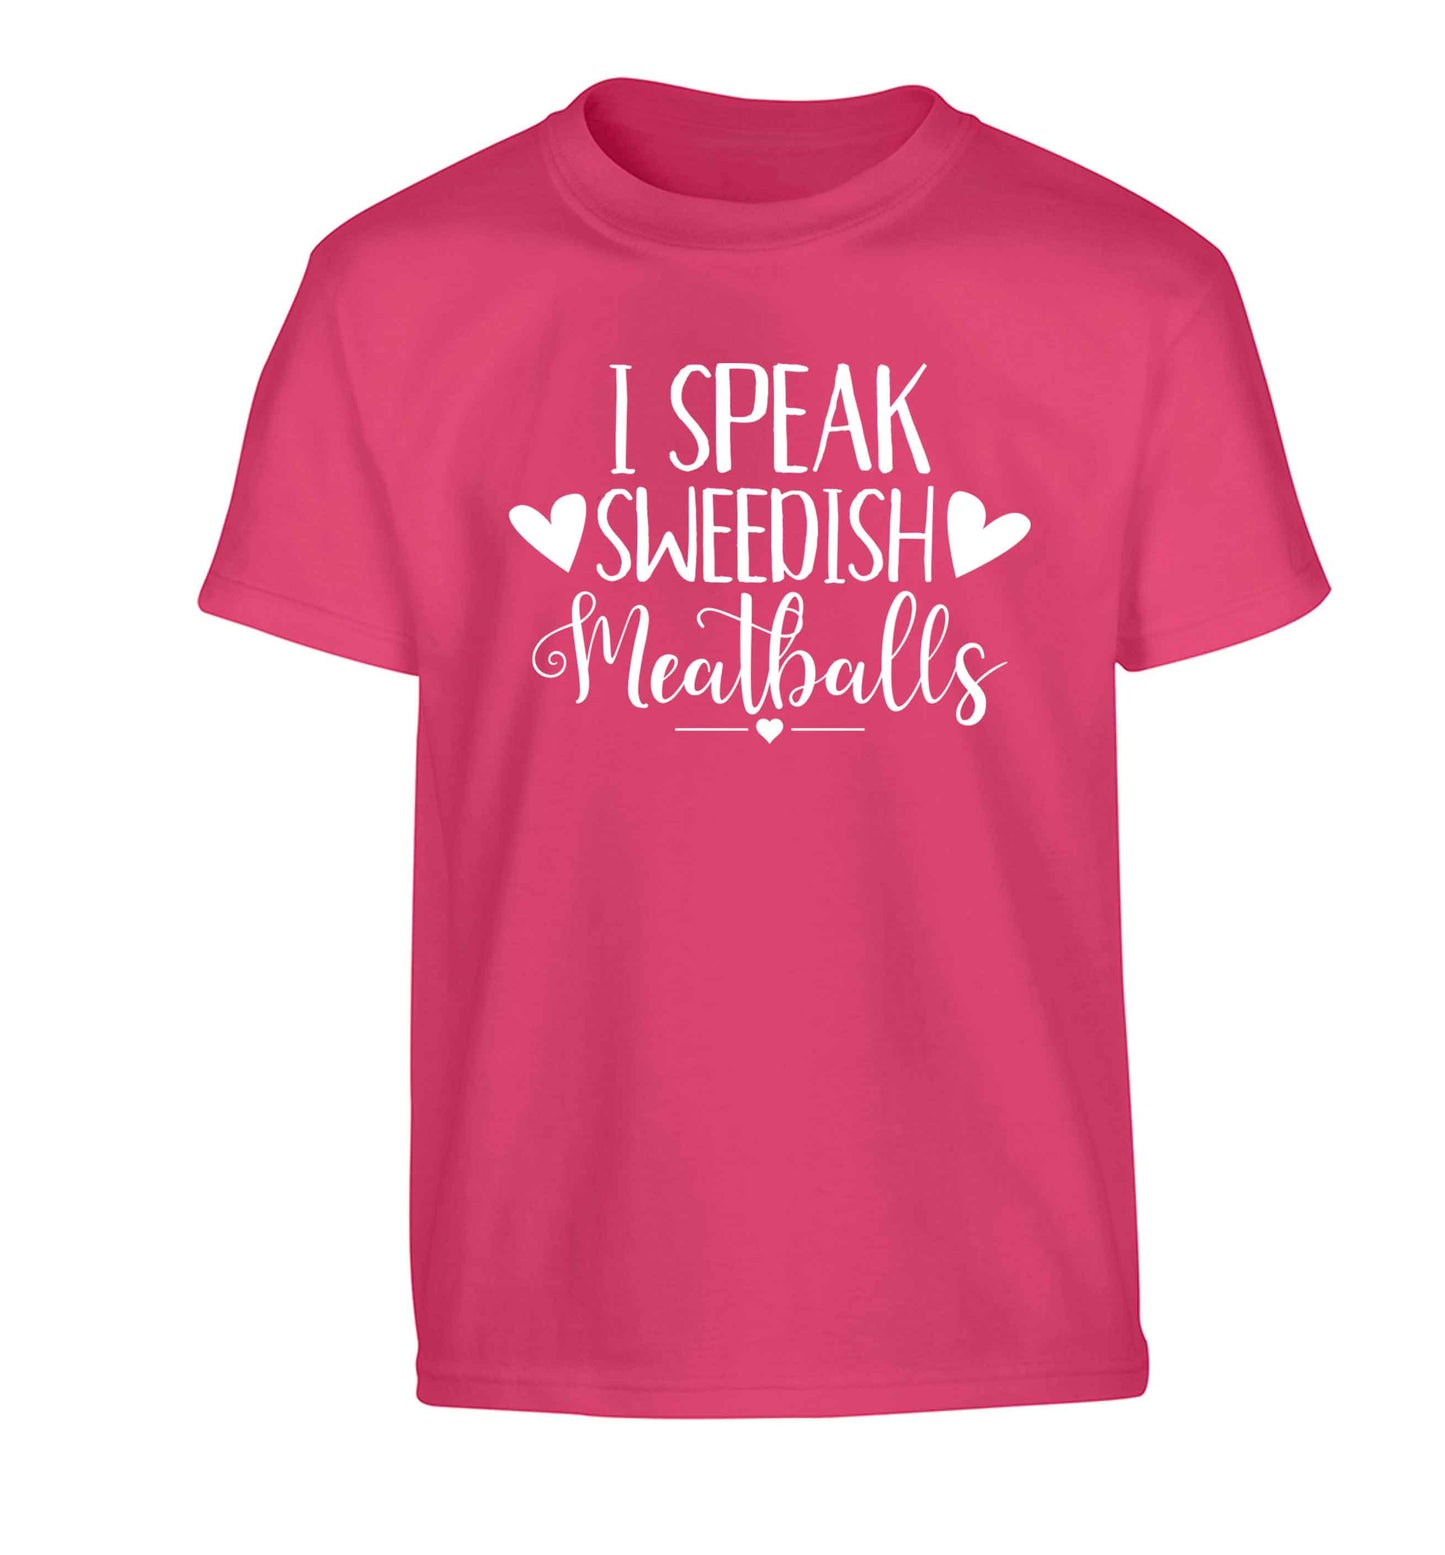 I speak sweedish...meatballs Children's pink Tshirt 12-13 Years